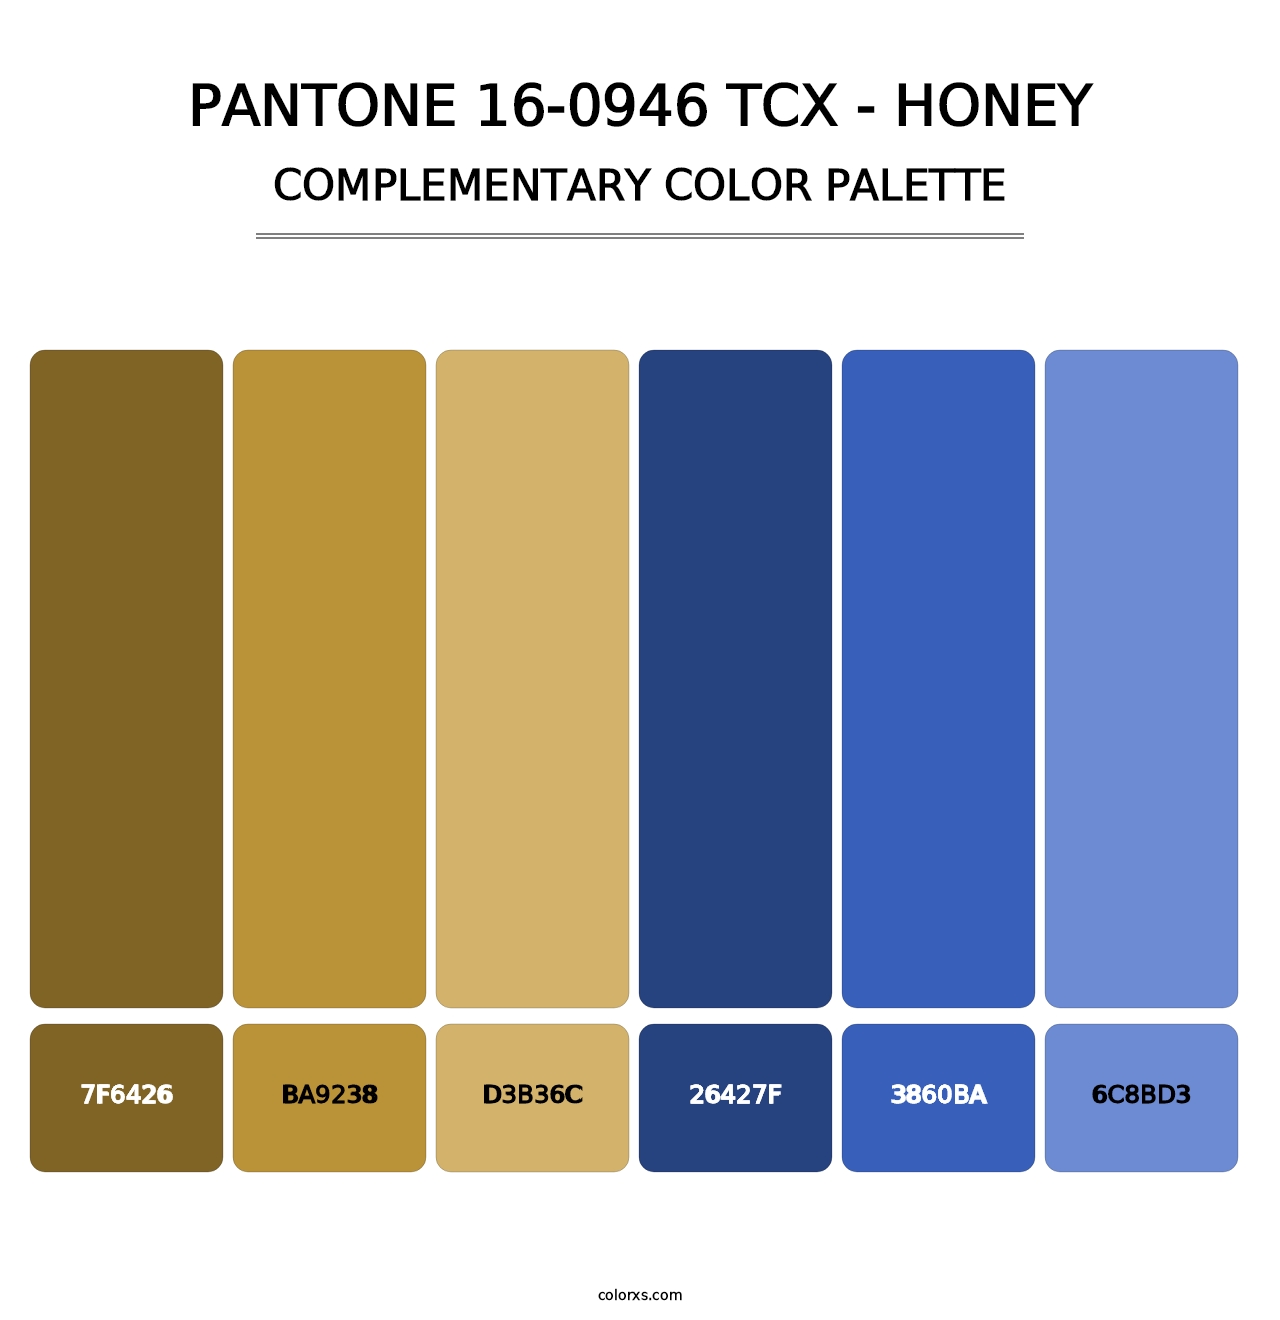 PANTONE 16-0946 TCX - Honey - Complementary Color Palette